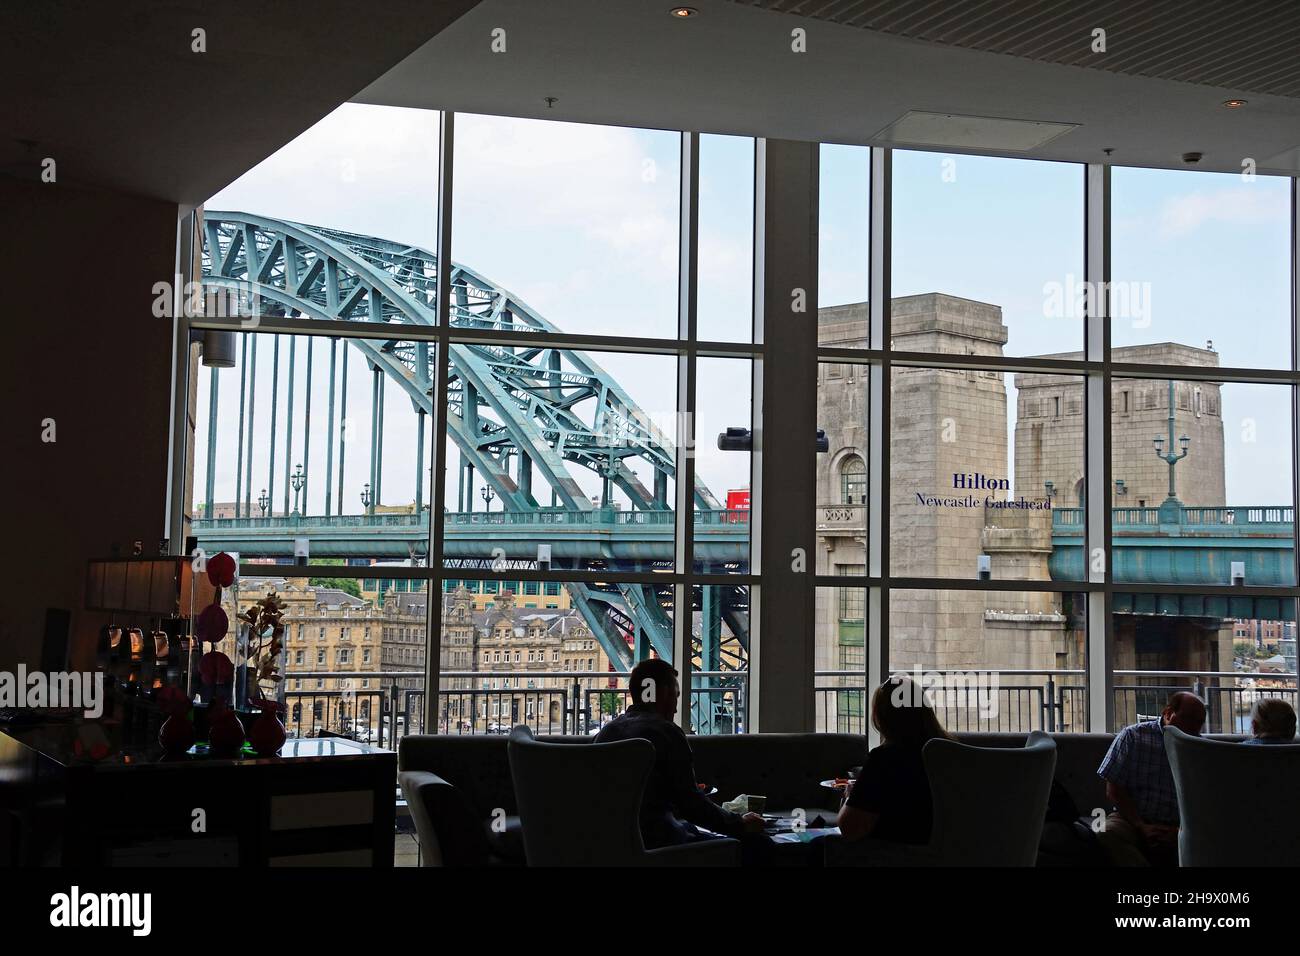 Gente sentada en el bar del hotel Hilton en Gateshead con vista al puente Tyne cruzando el río Tyne, Newcastle upon Tyne, Tyne y Wear, Reino Unido Foto de stock